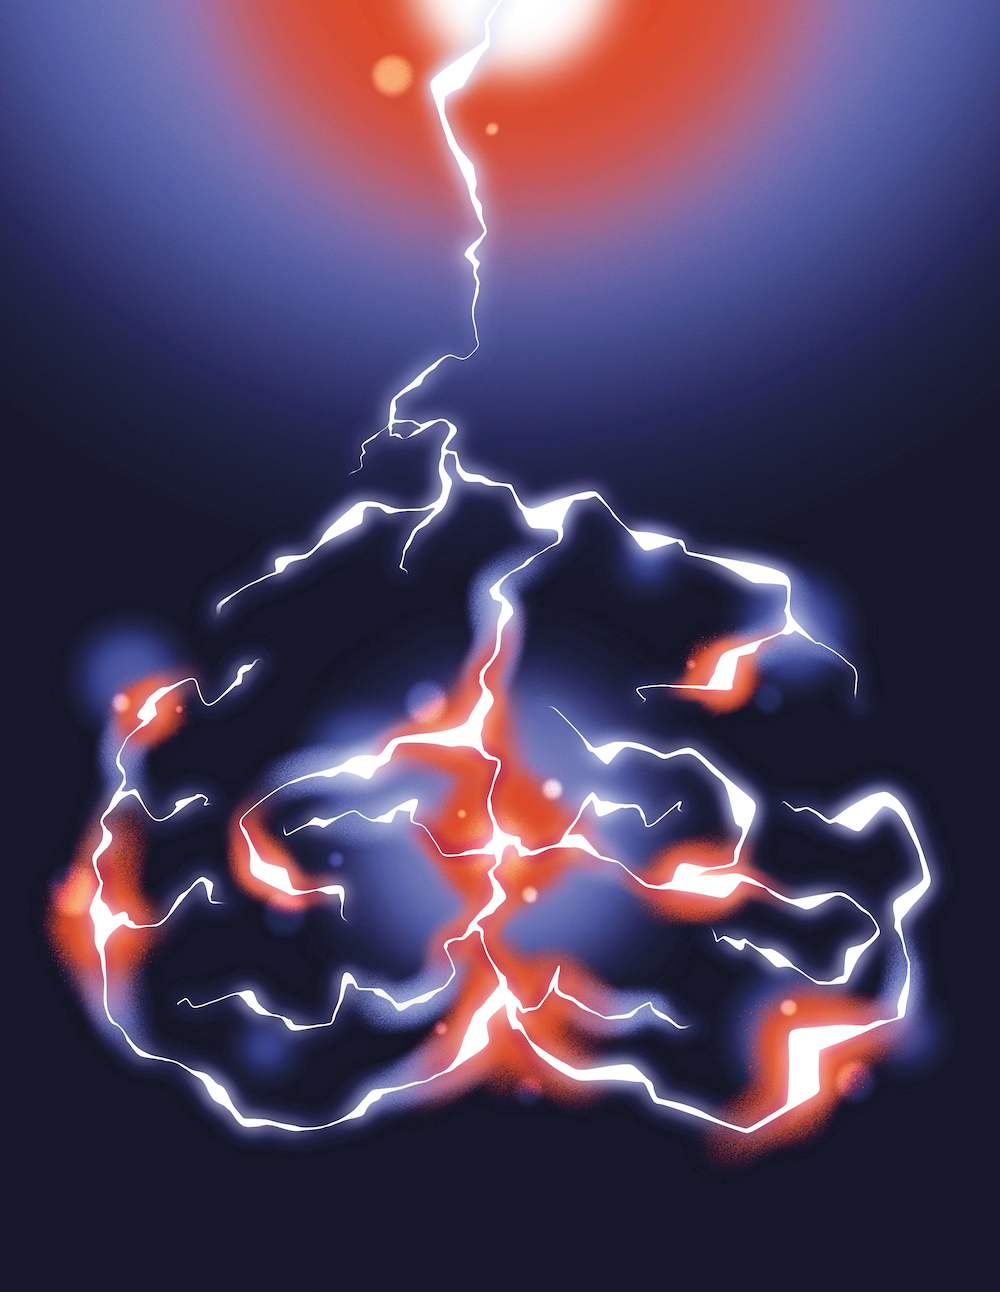 Lightning bolt lighting up the brain.